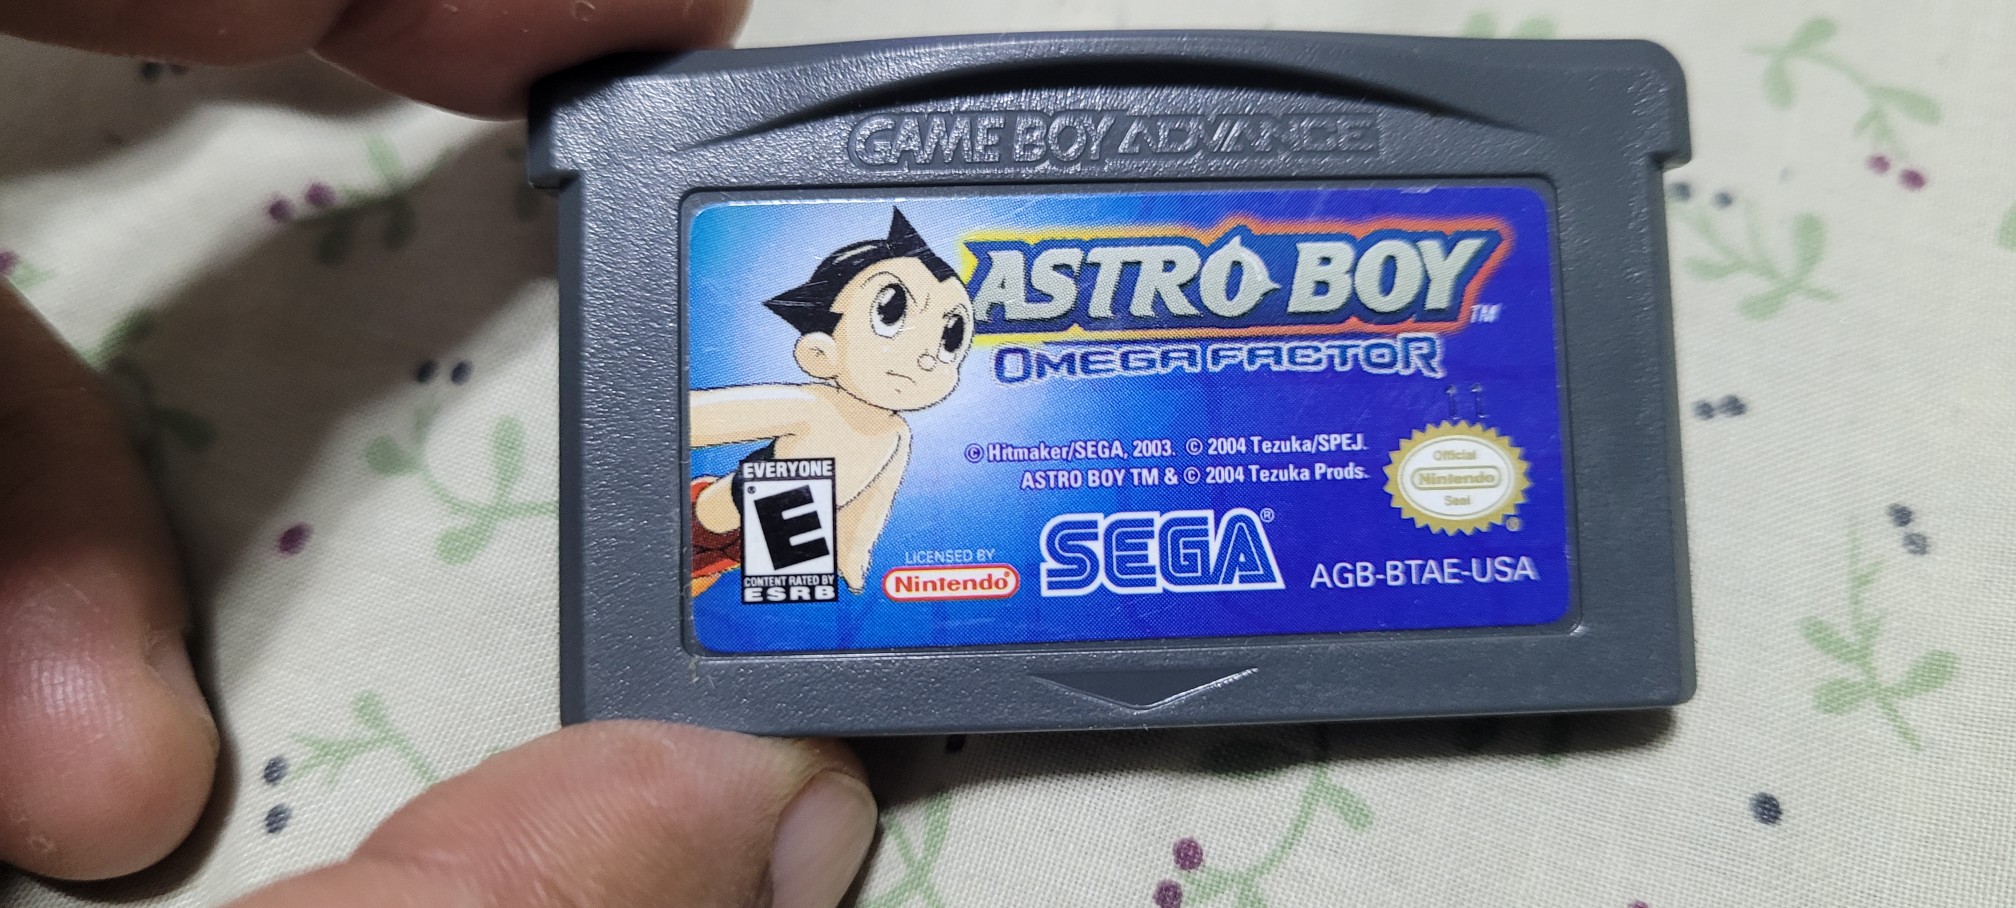 consolas y videojuegos - Gba astro boy original 0